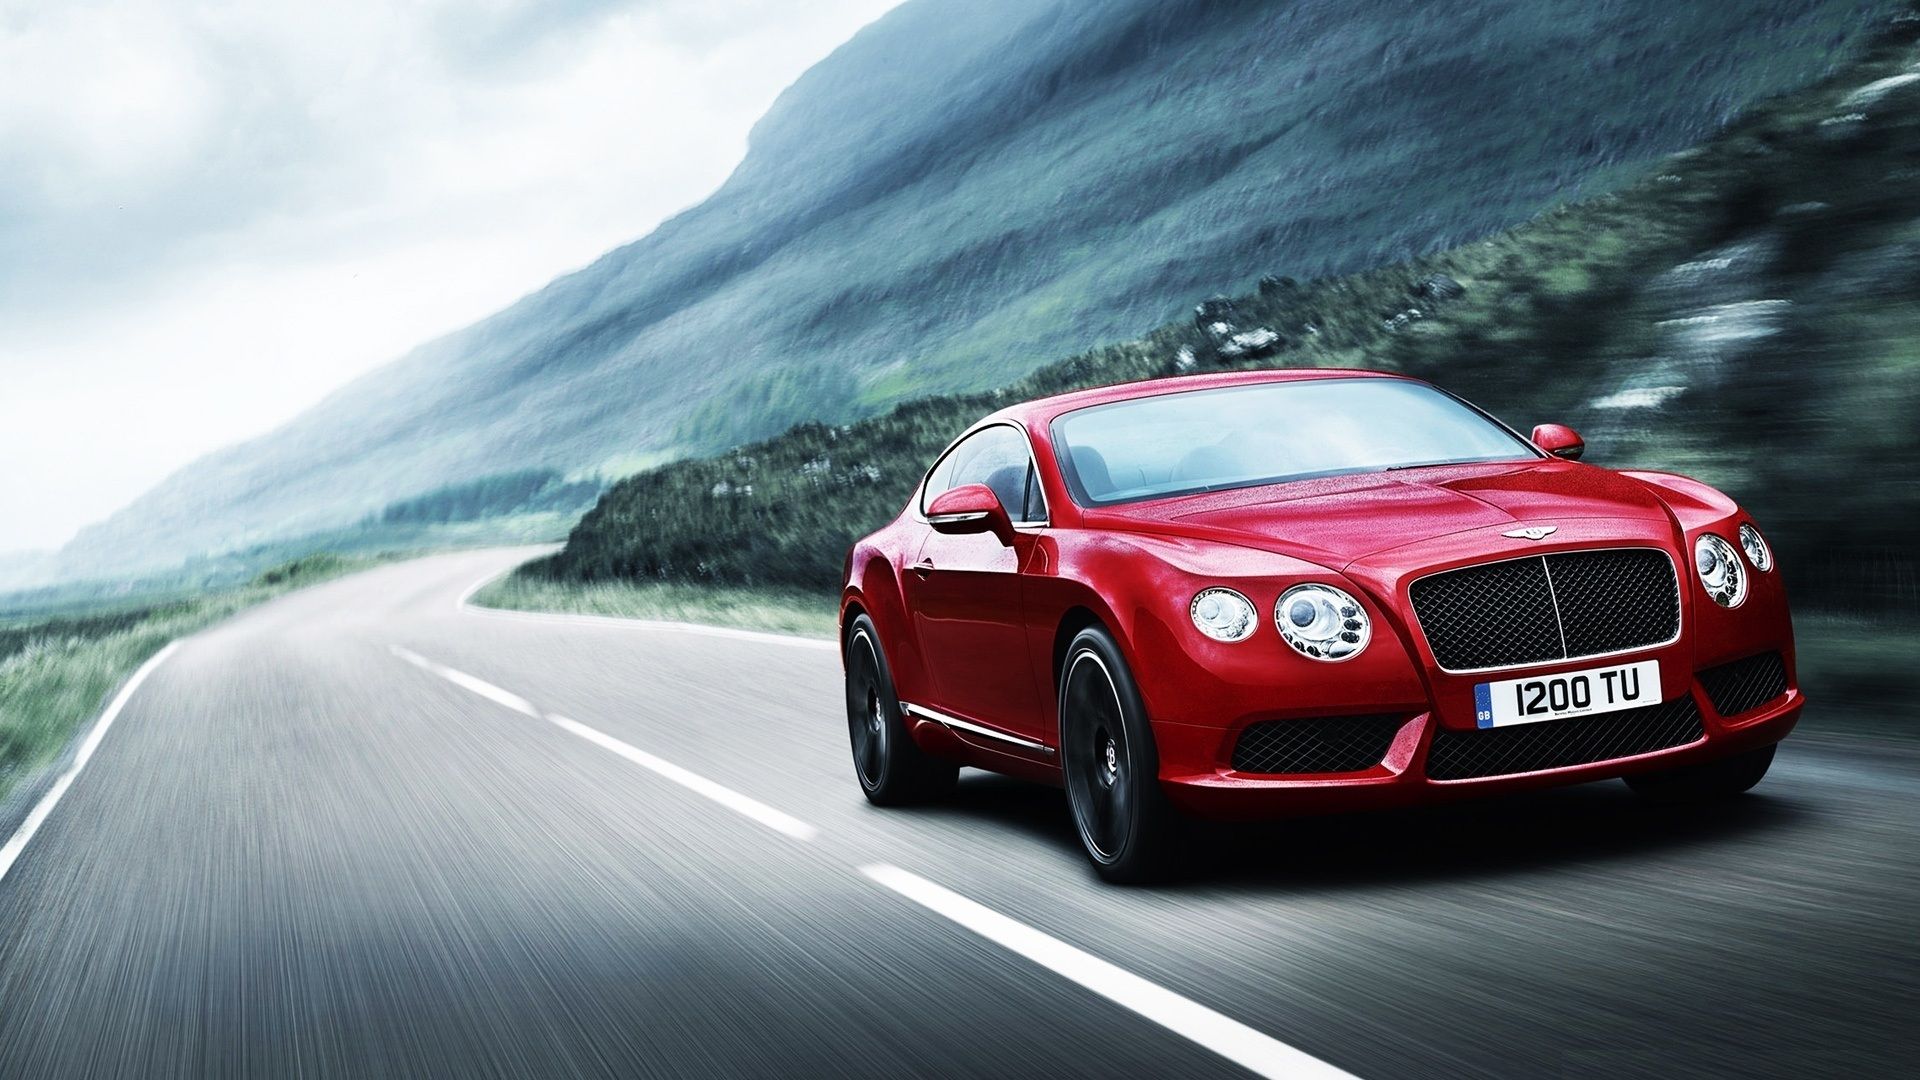 Xe hơi Bentley đỏ 2012: Chiếc xe hơi sang trọng Bentley đỏ ra mắt năm 2012 sẽ làm người xem mãn nhãn với thiết kế tinh tế, sức mạnh đầy ấn tượng và độ sang trọng hoàn hảo. Hãy cùng chiêm ngưỡng chiếc xe hơi Bentley đỏ 2012 qua hình ảnh đầy tính chất thời sự!